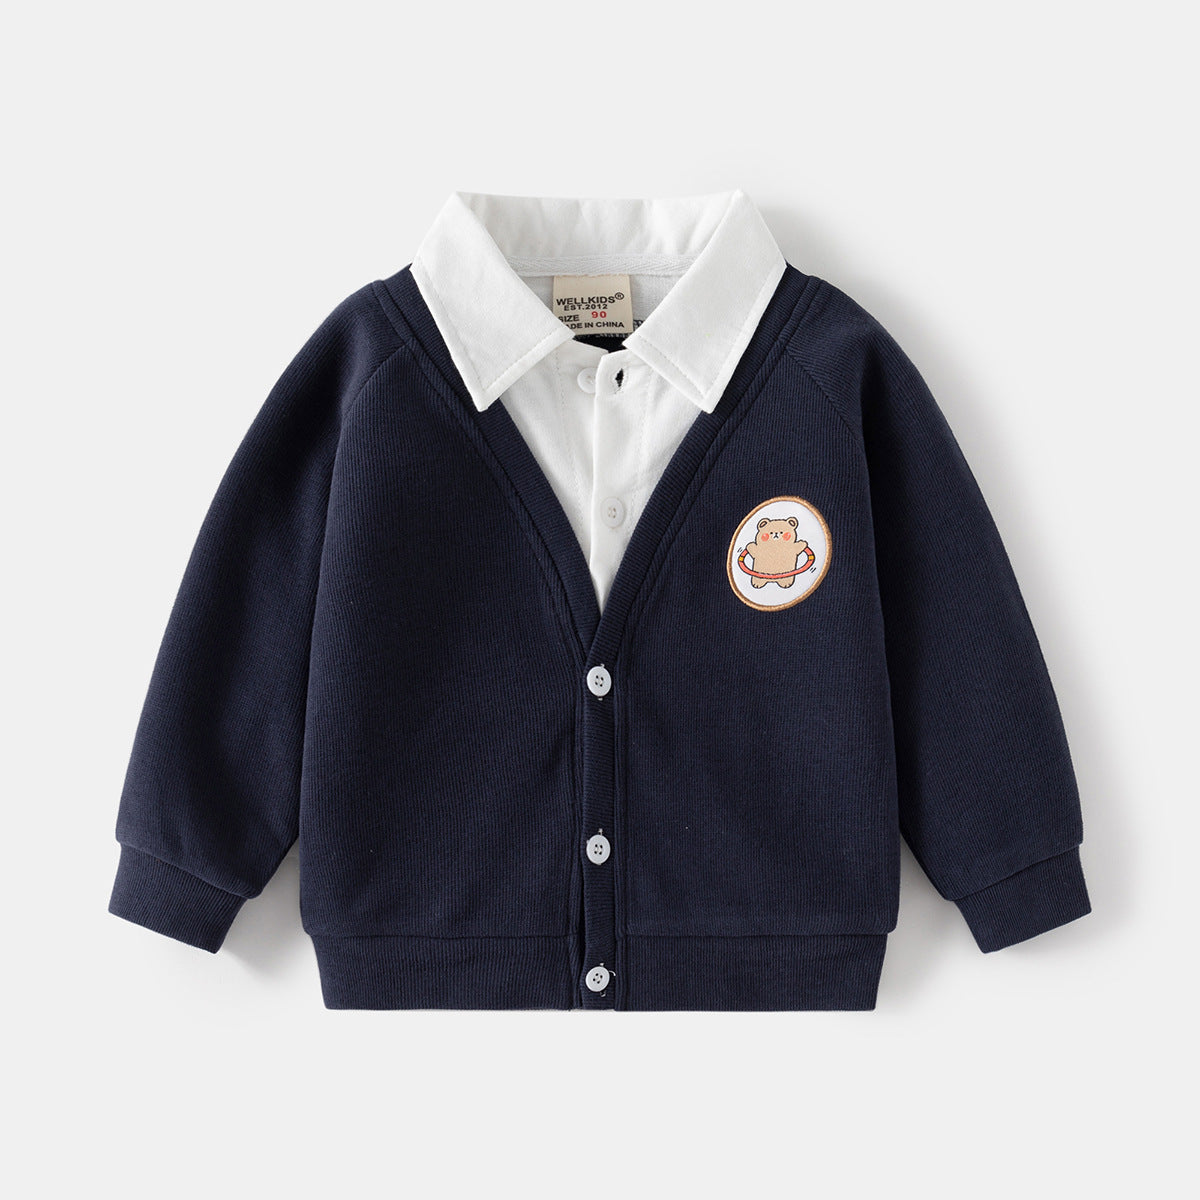 [5131053] - Baju Kemeja Sweater Lengan Panjang Fashion Import Anak Laki-Laki - Motif Bear Style